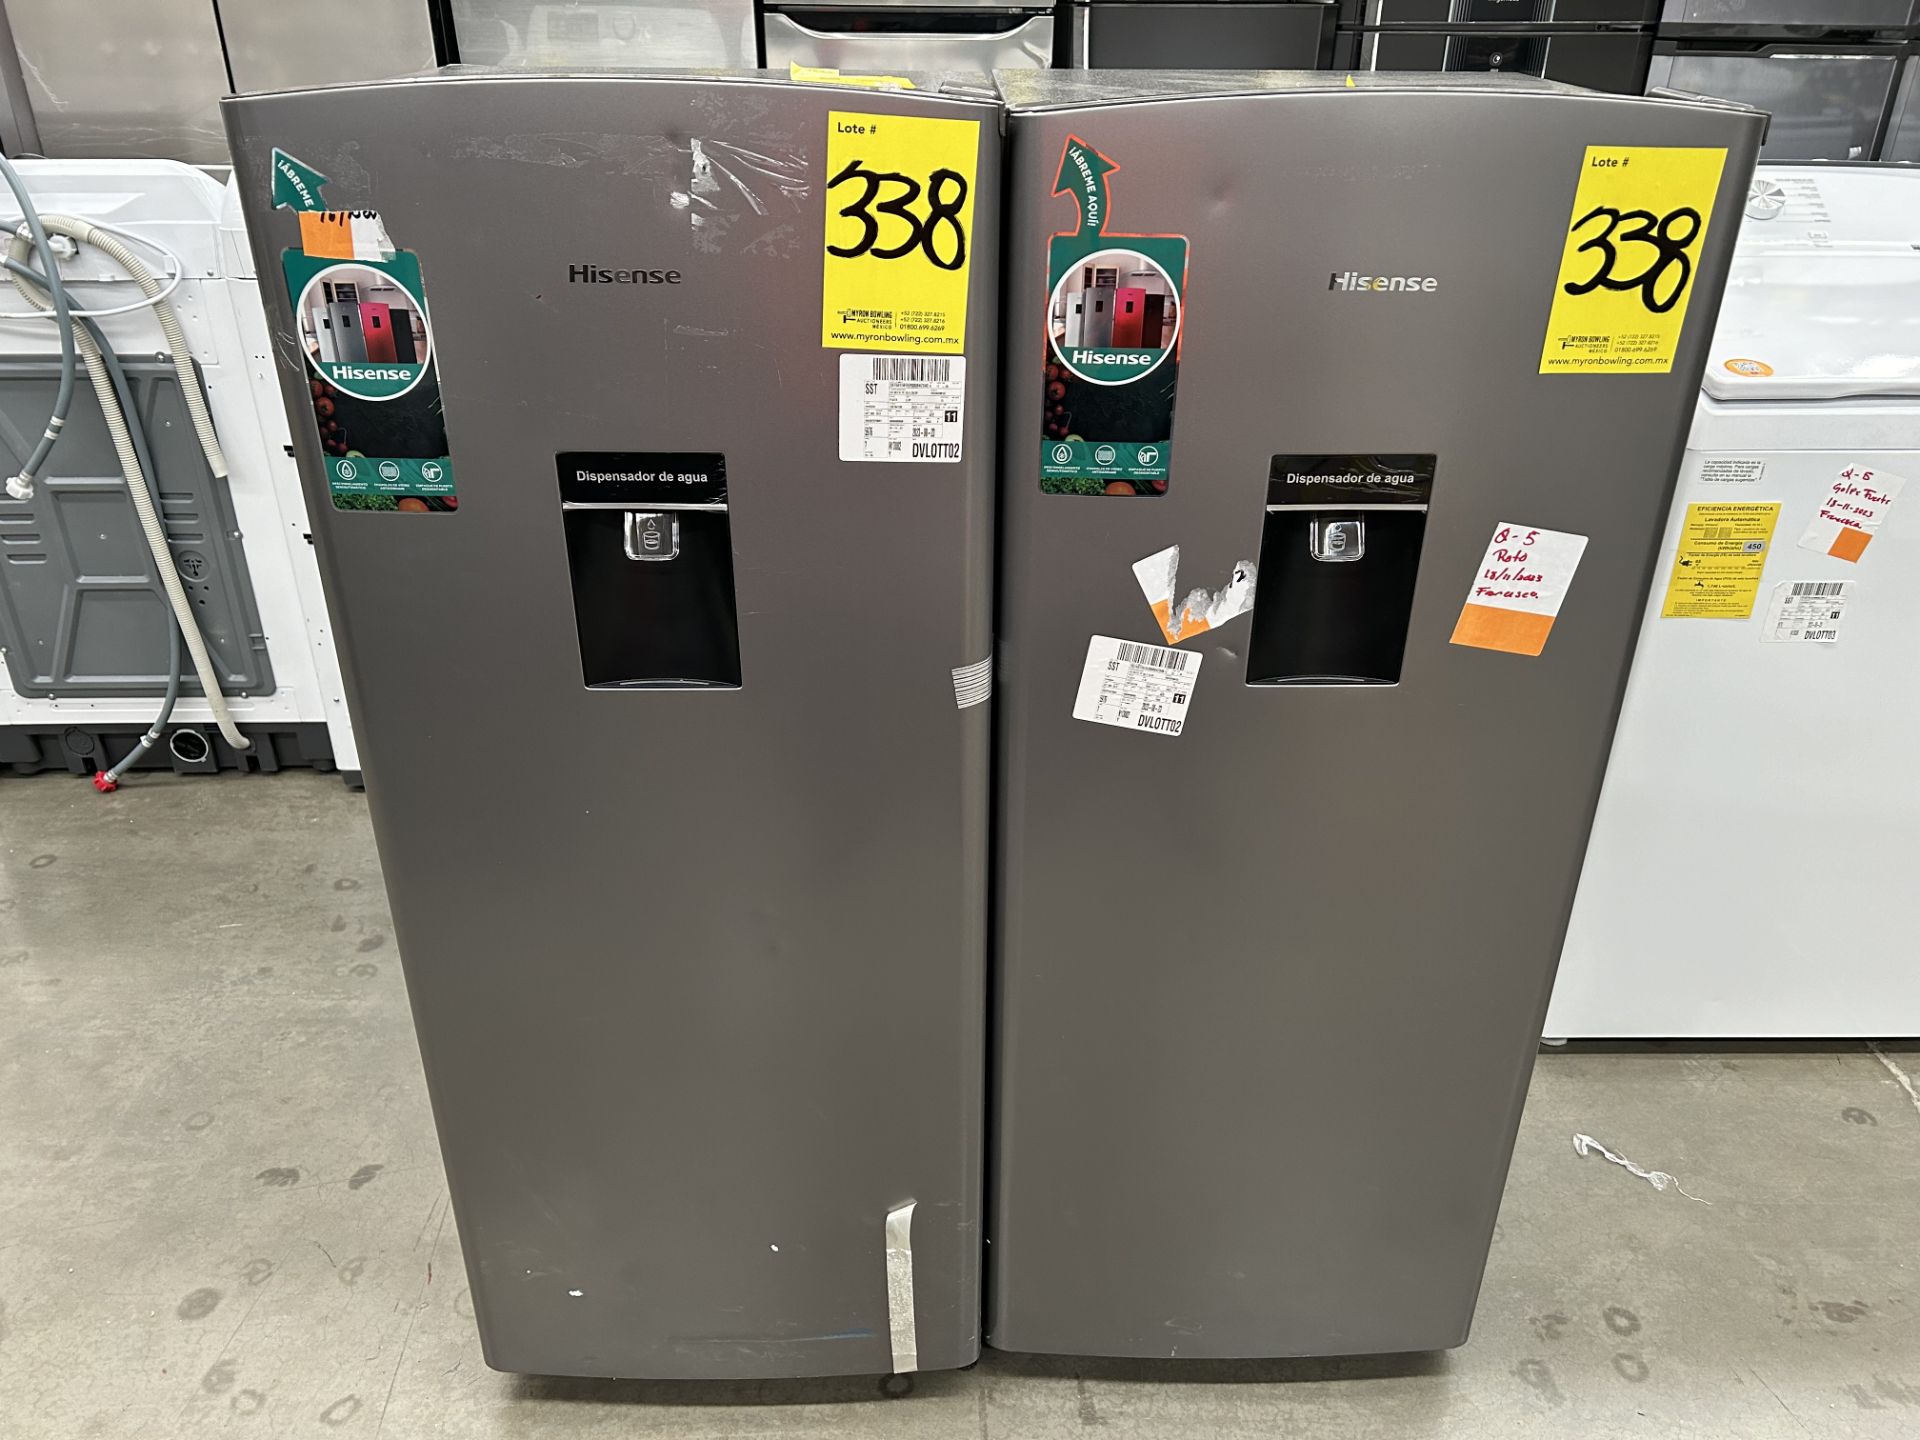 Lote de 2 refrigeradores contiene: 1 Refrigerador con dispensador de agua Marca HISENSE, Modelo RR6